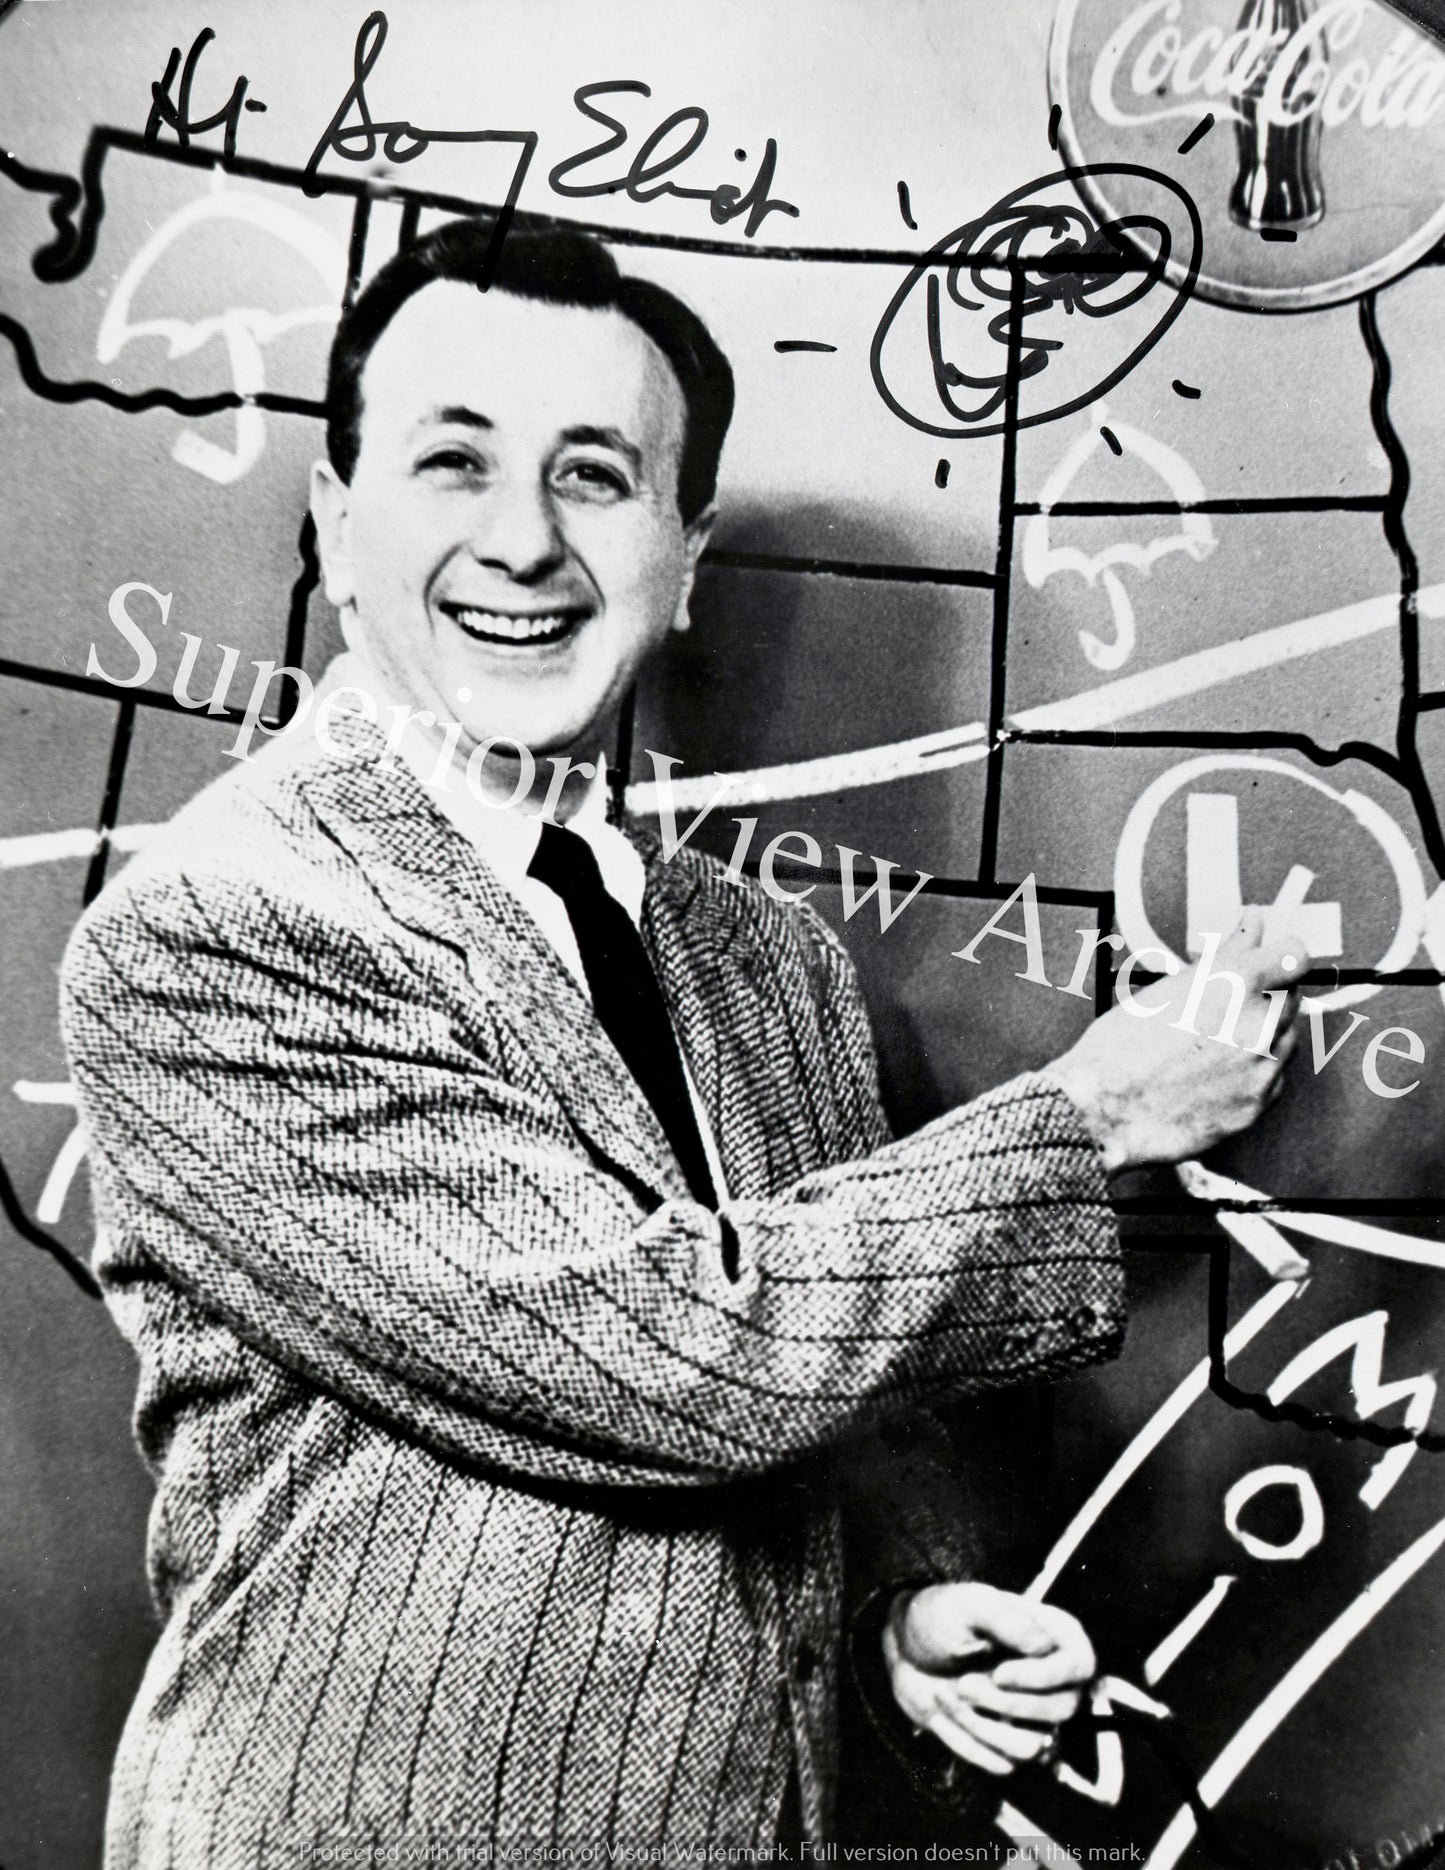 Meteorologist Sonny Elliot